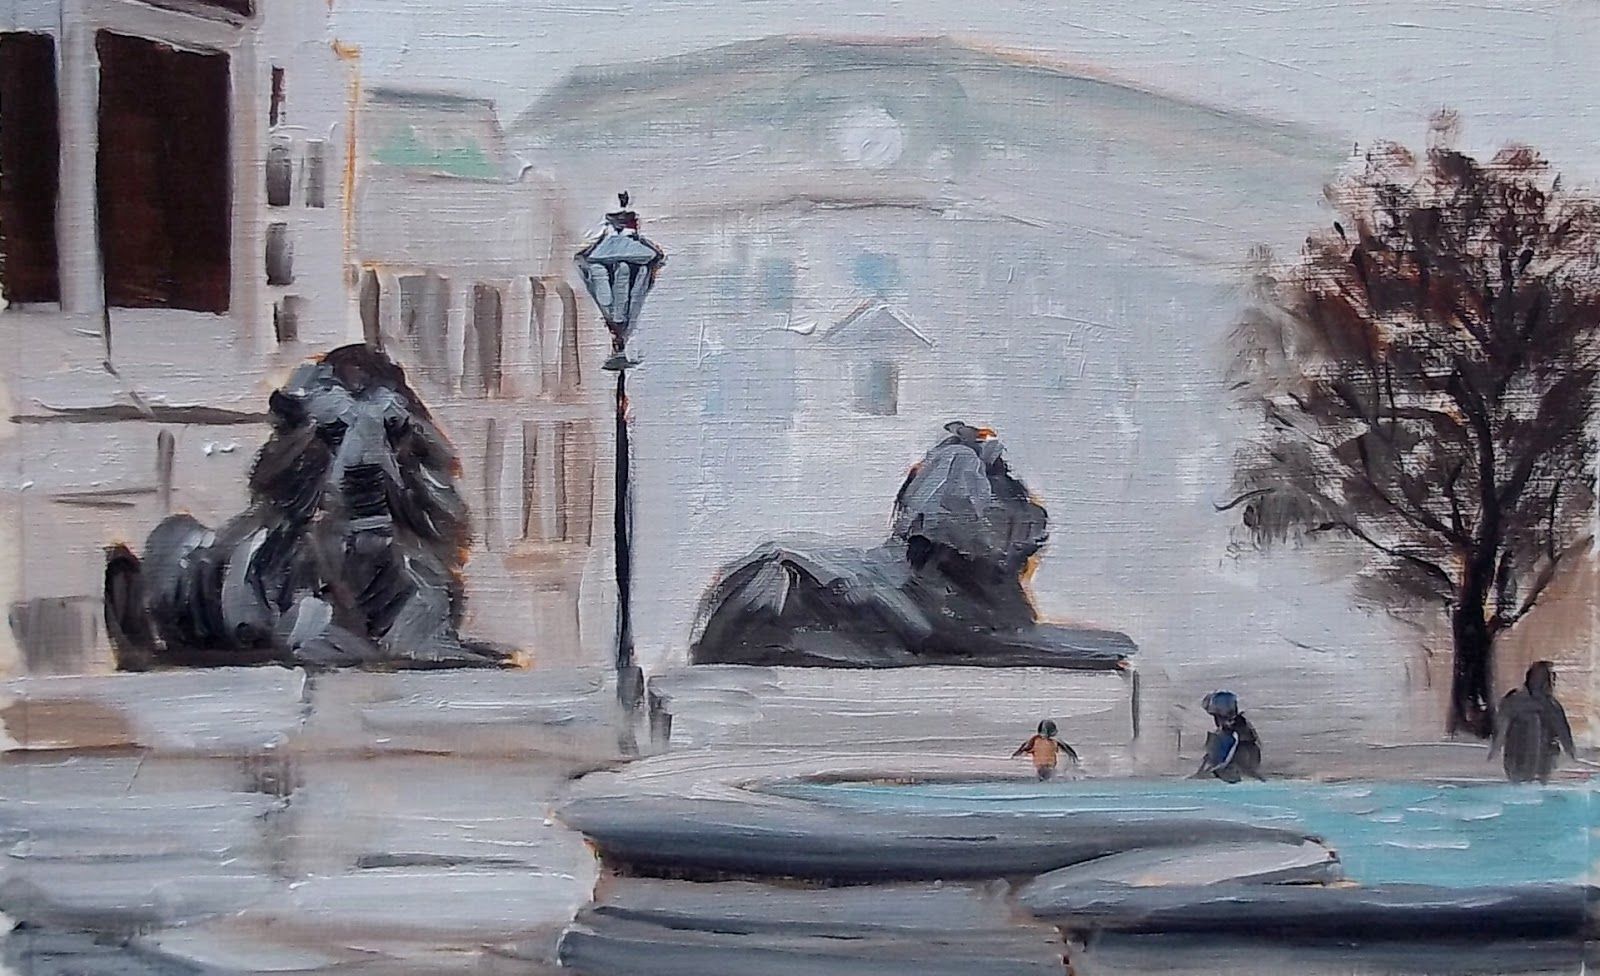 Trafalgar Square by Azra Iqbal